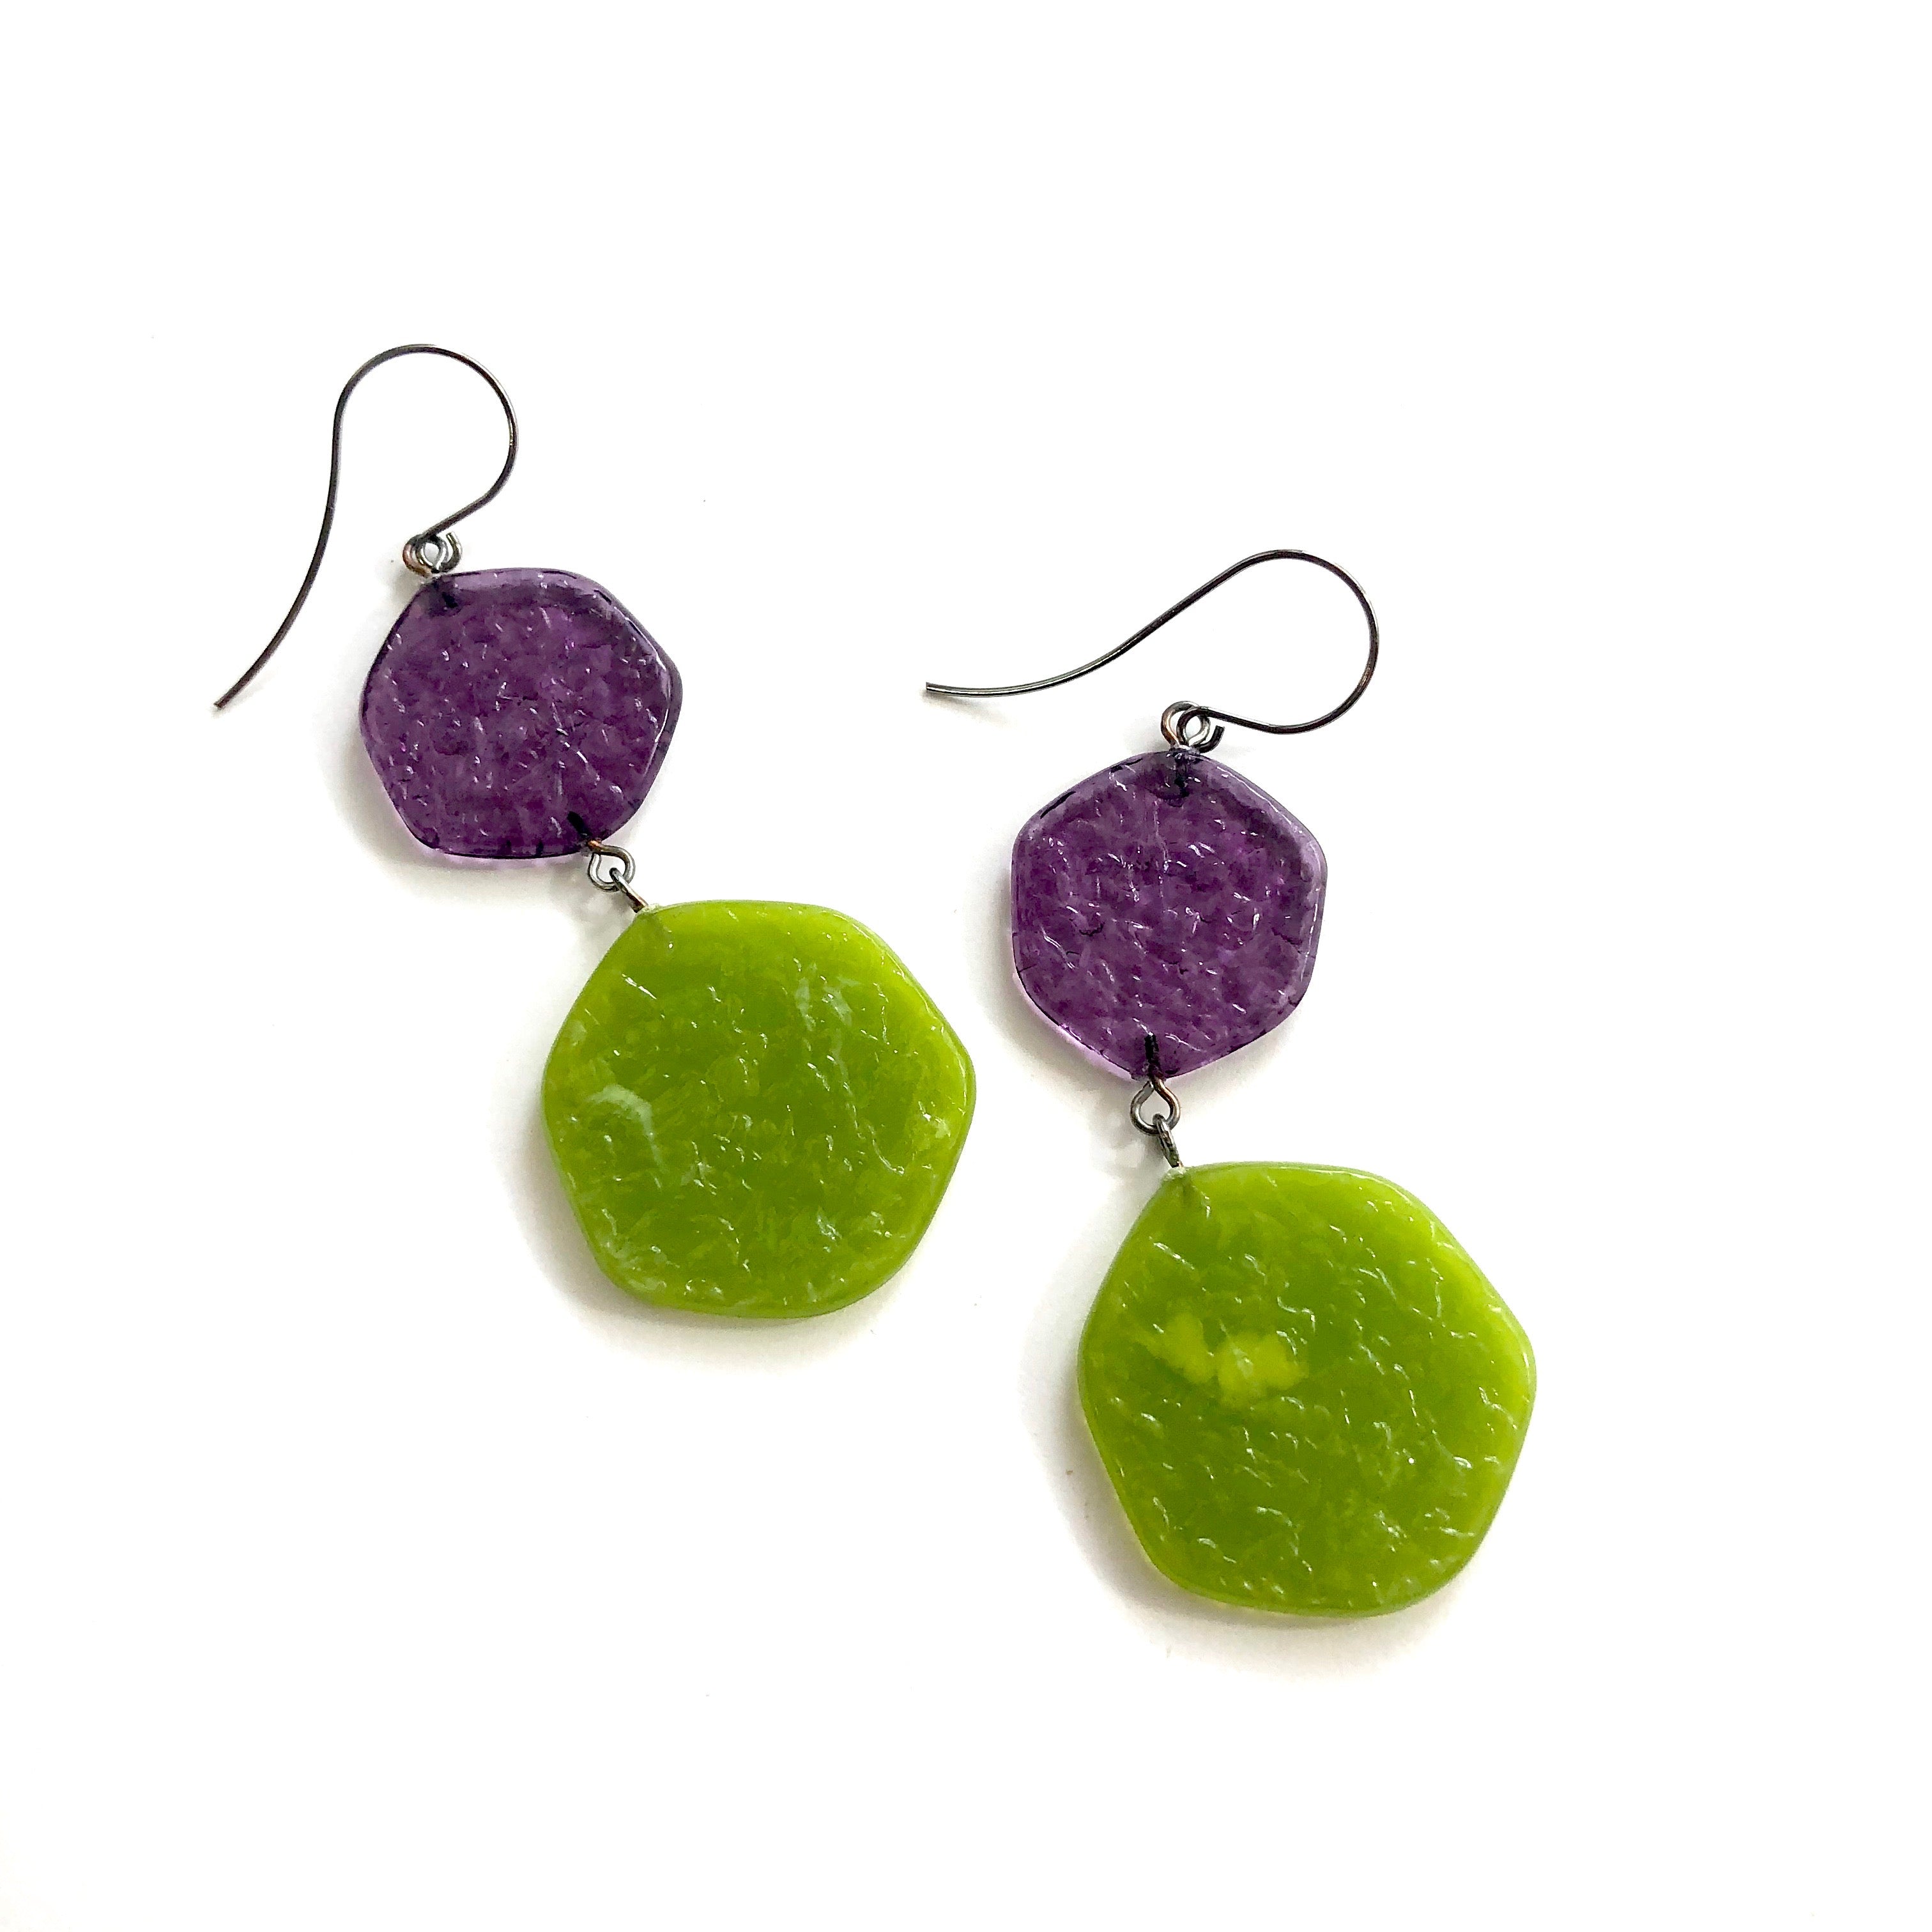 purple earrings